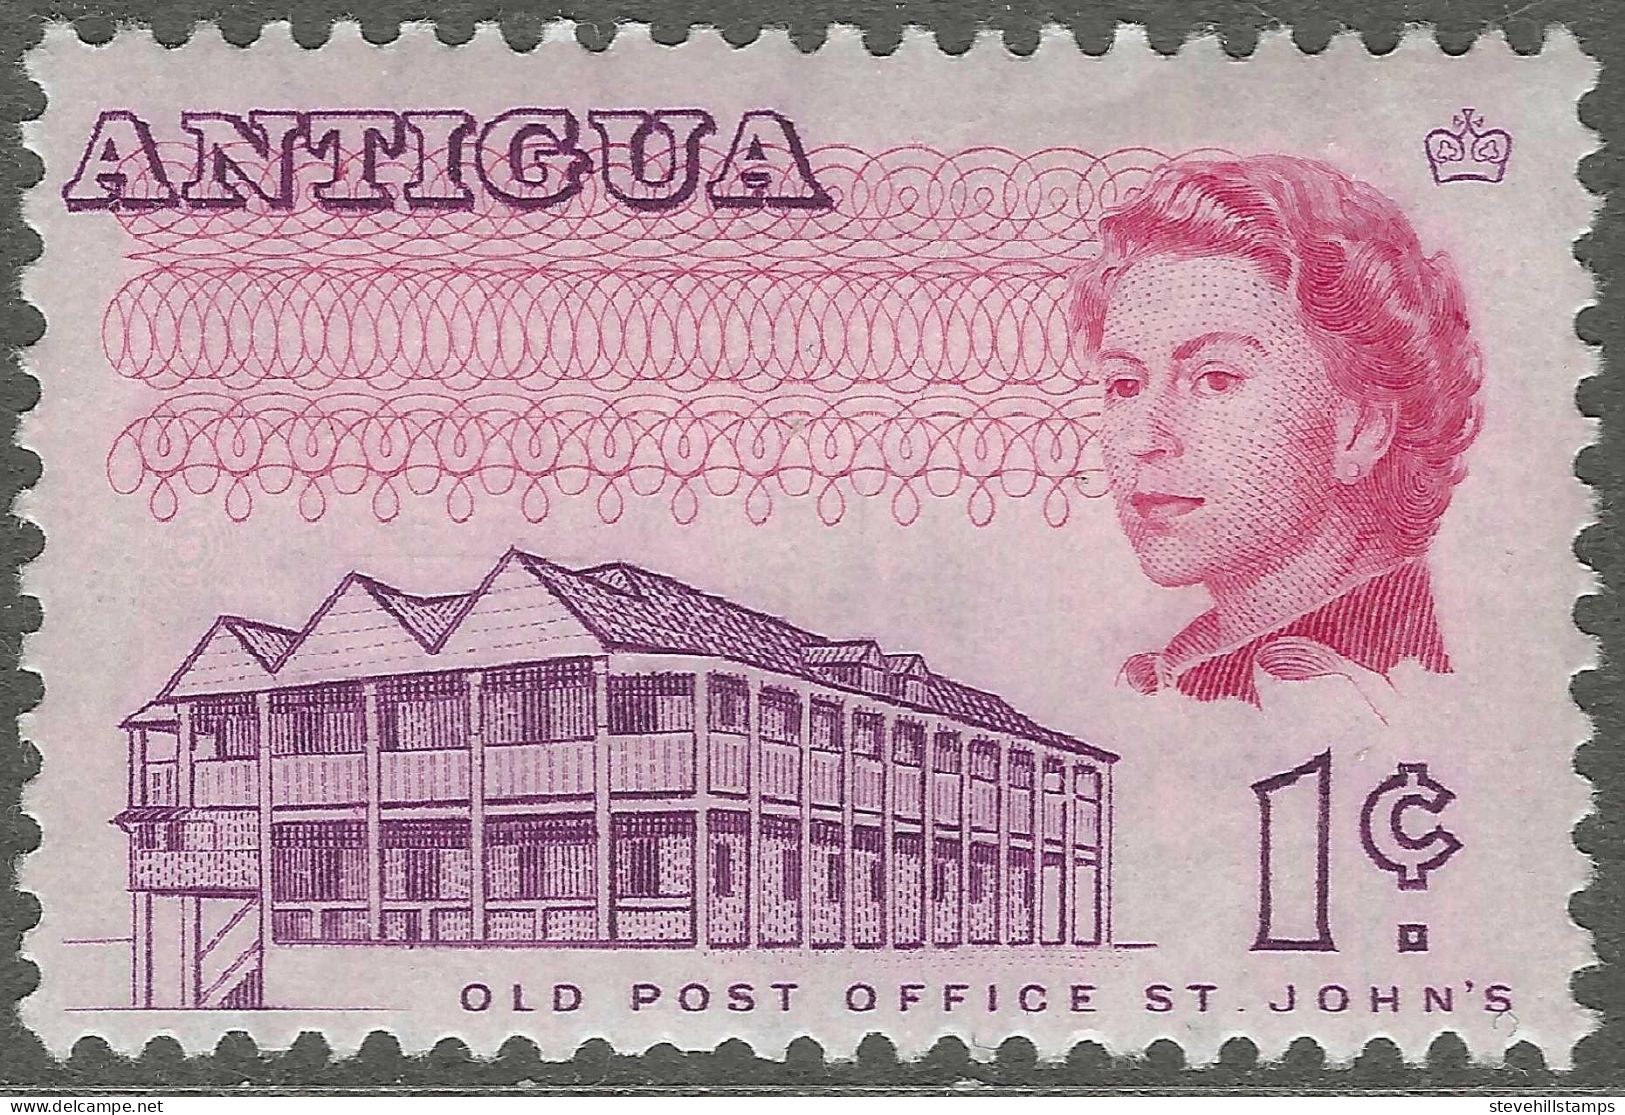 Antigua. 1966-70 QEII. 1c MH. P11½X11 SG 181 - 1960-1981 Autonomia Interna